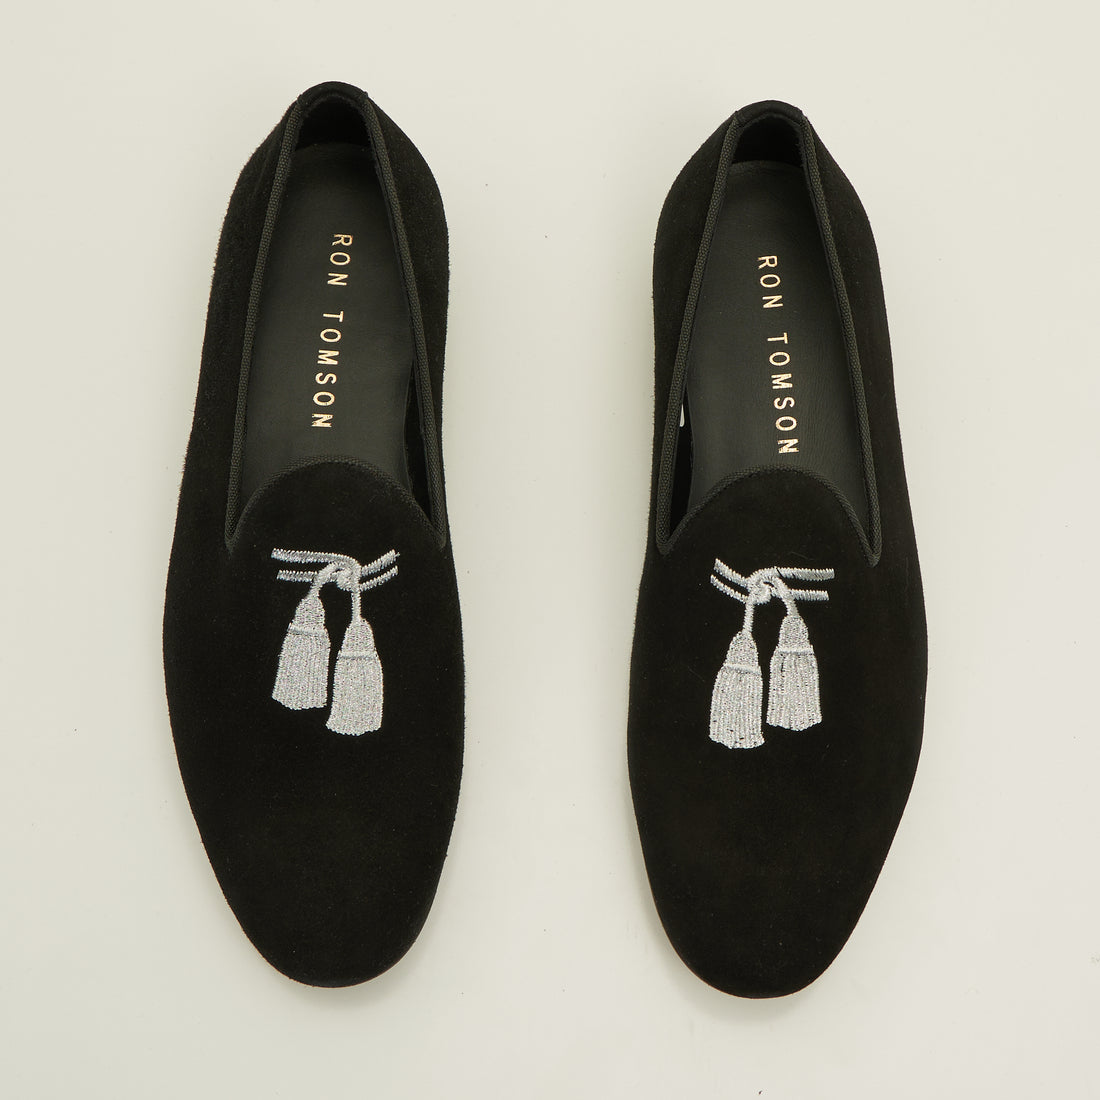 Tassels Formal Leather Loafer -Black Suede